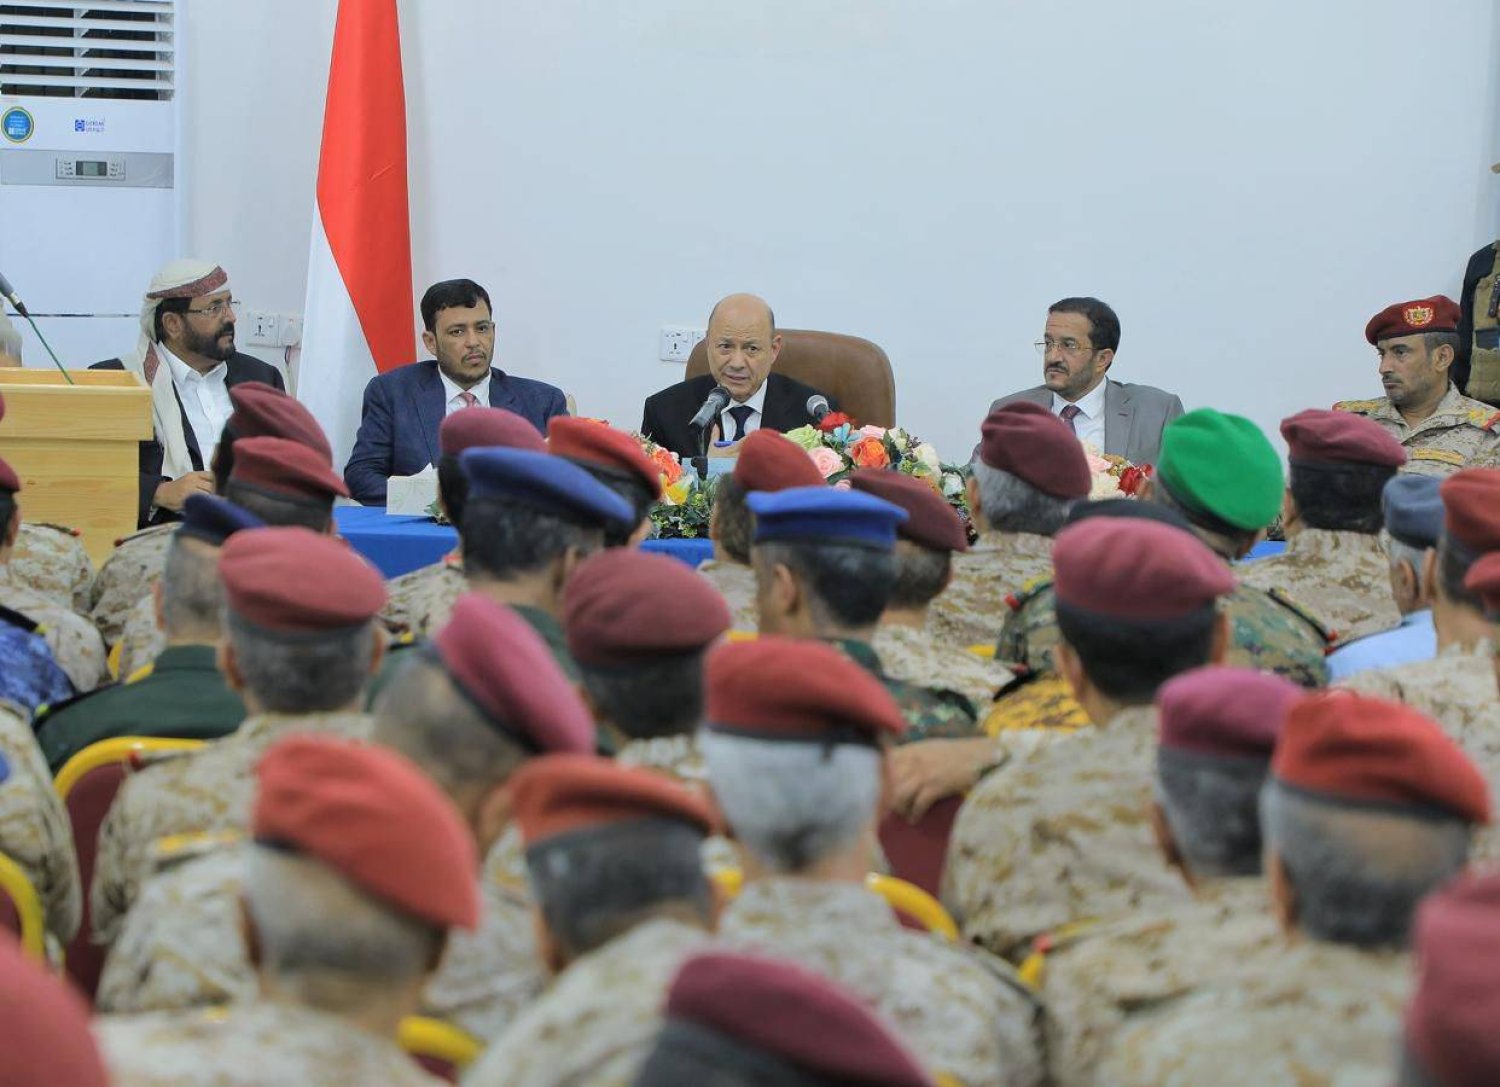 العليمي هاجم الحوثيين من مأرب وشدد على جاهزية الجيش لاستعادة صنعاء (سبأ)